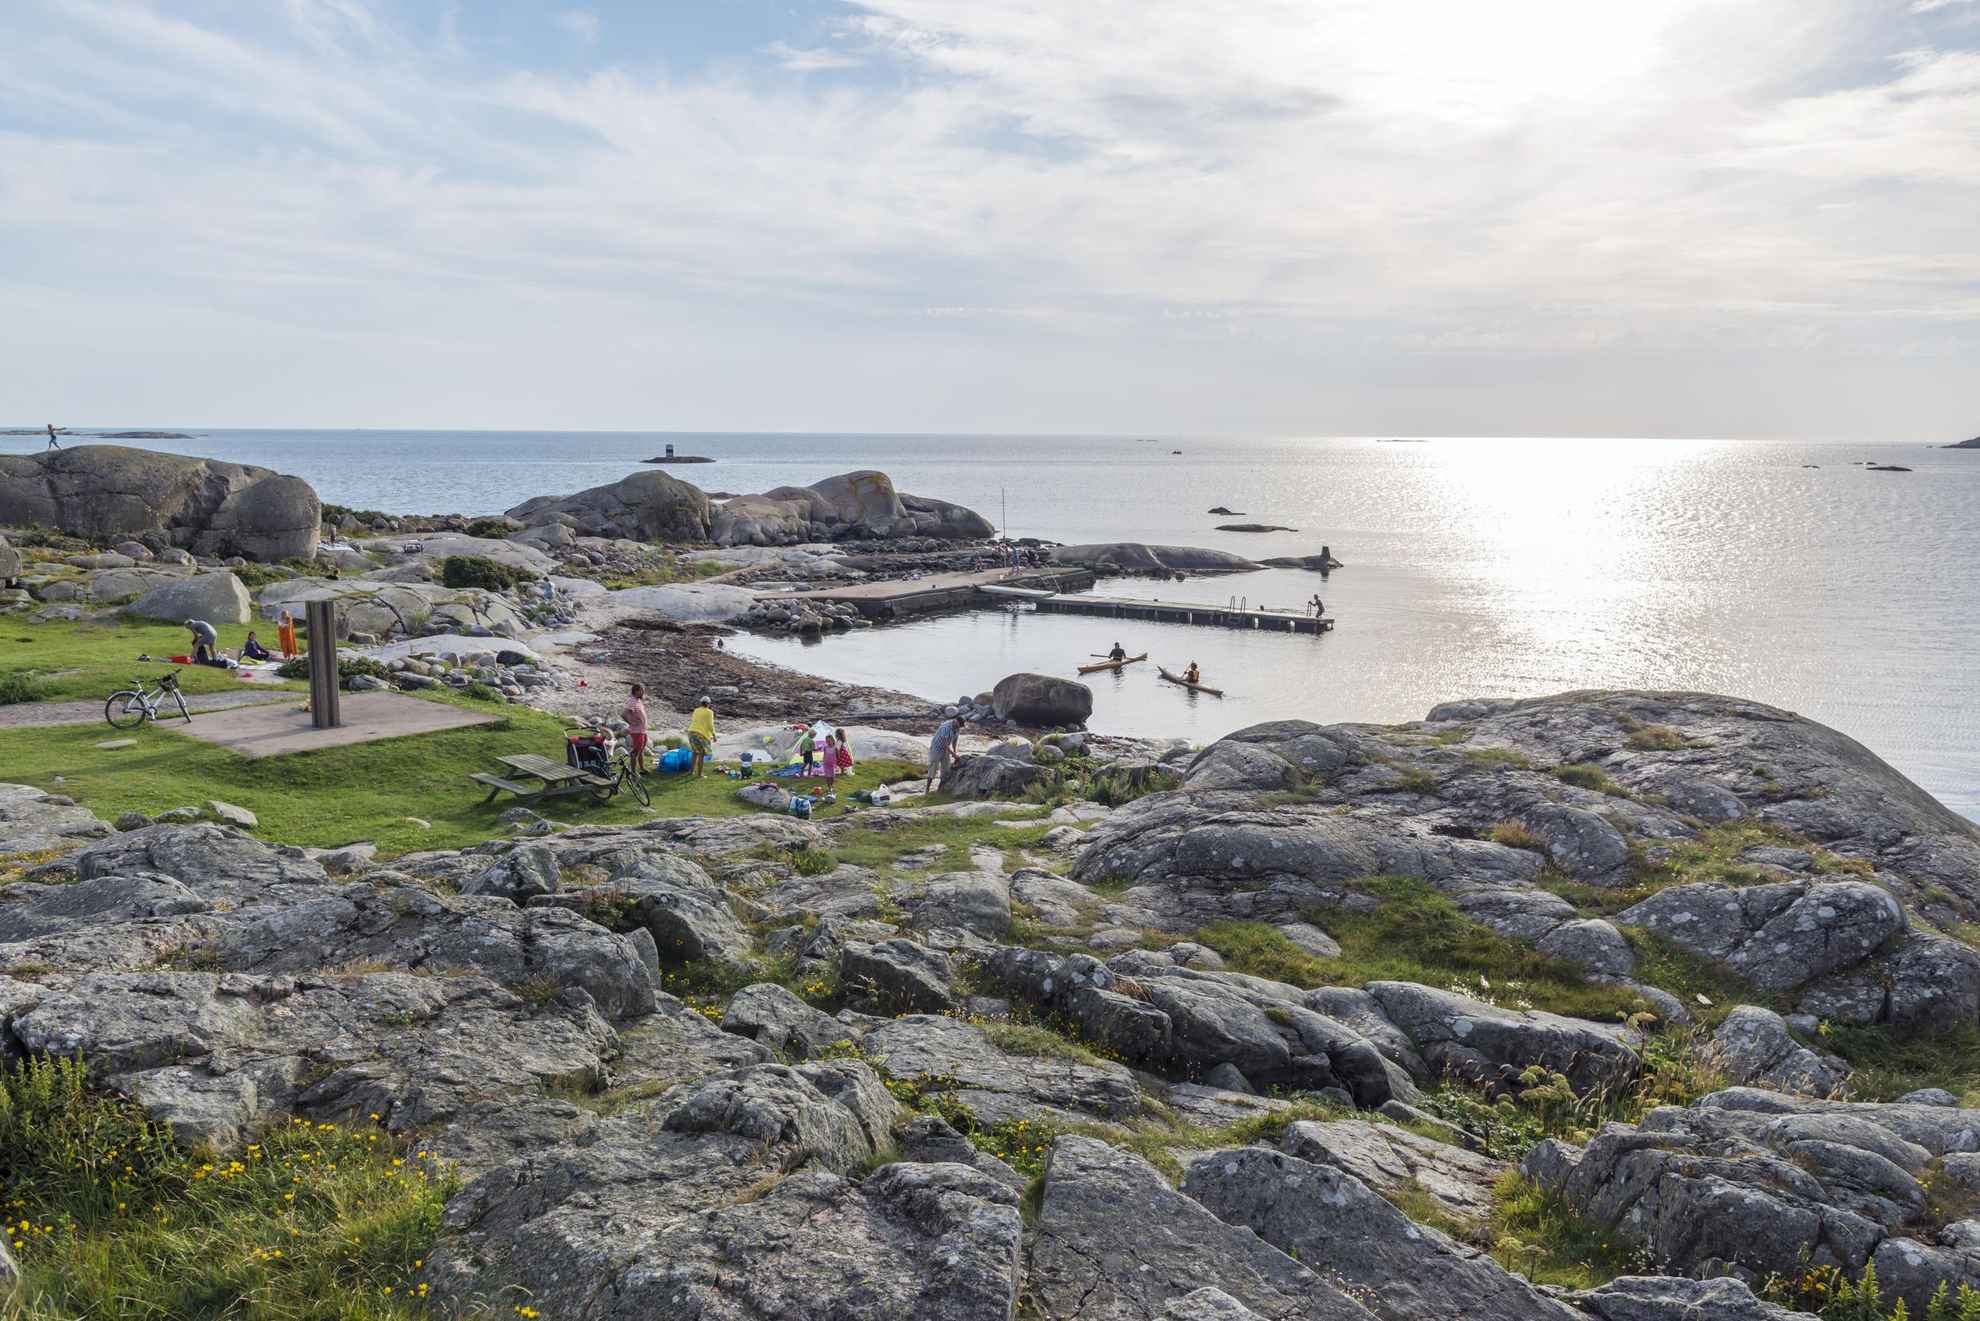 Ein felsiger Strand auf der Insel Hönö in den Schären von Göteborg. Menschen besuchen den Strand. Im Wasser sind Kajak-Fahrer